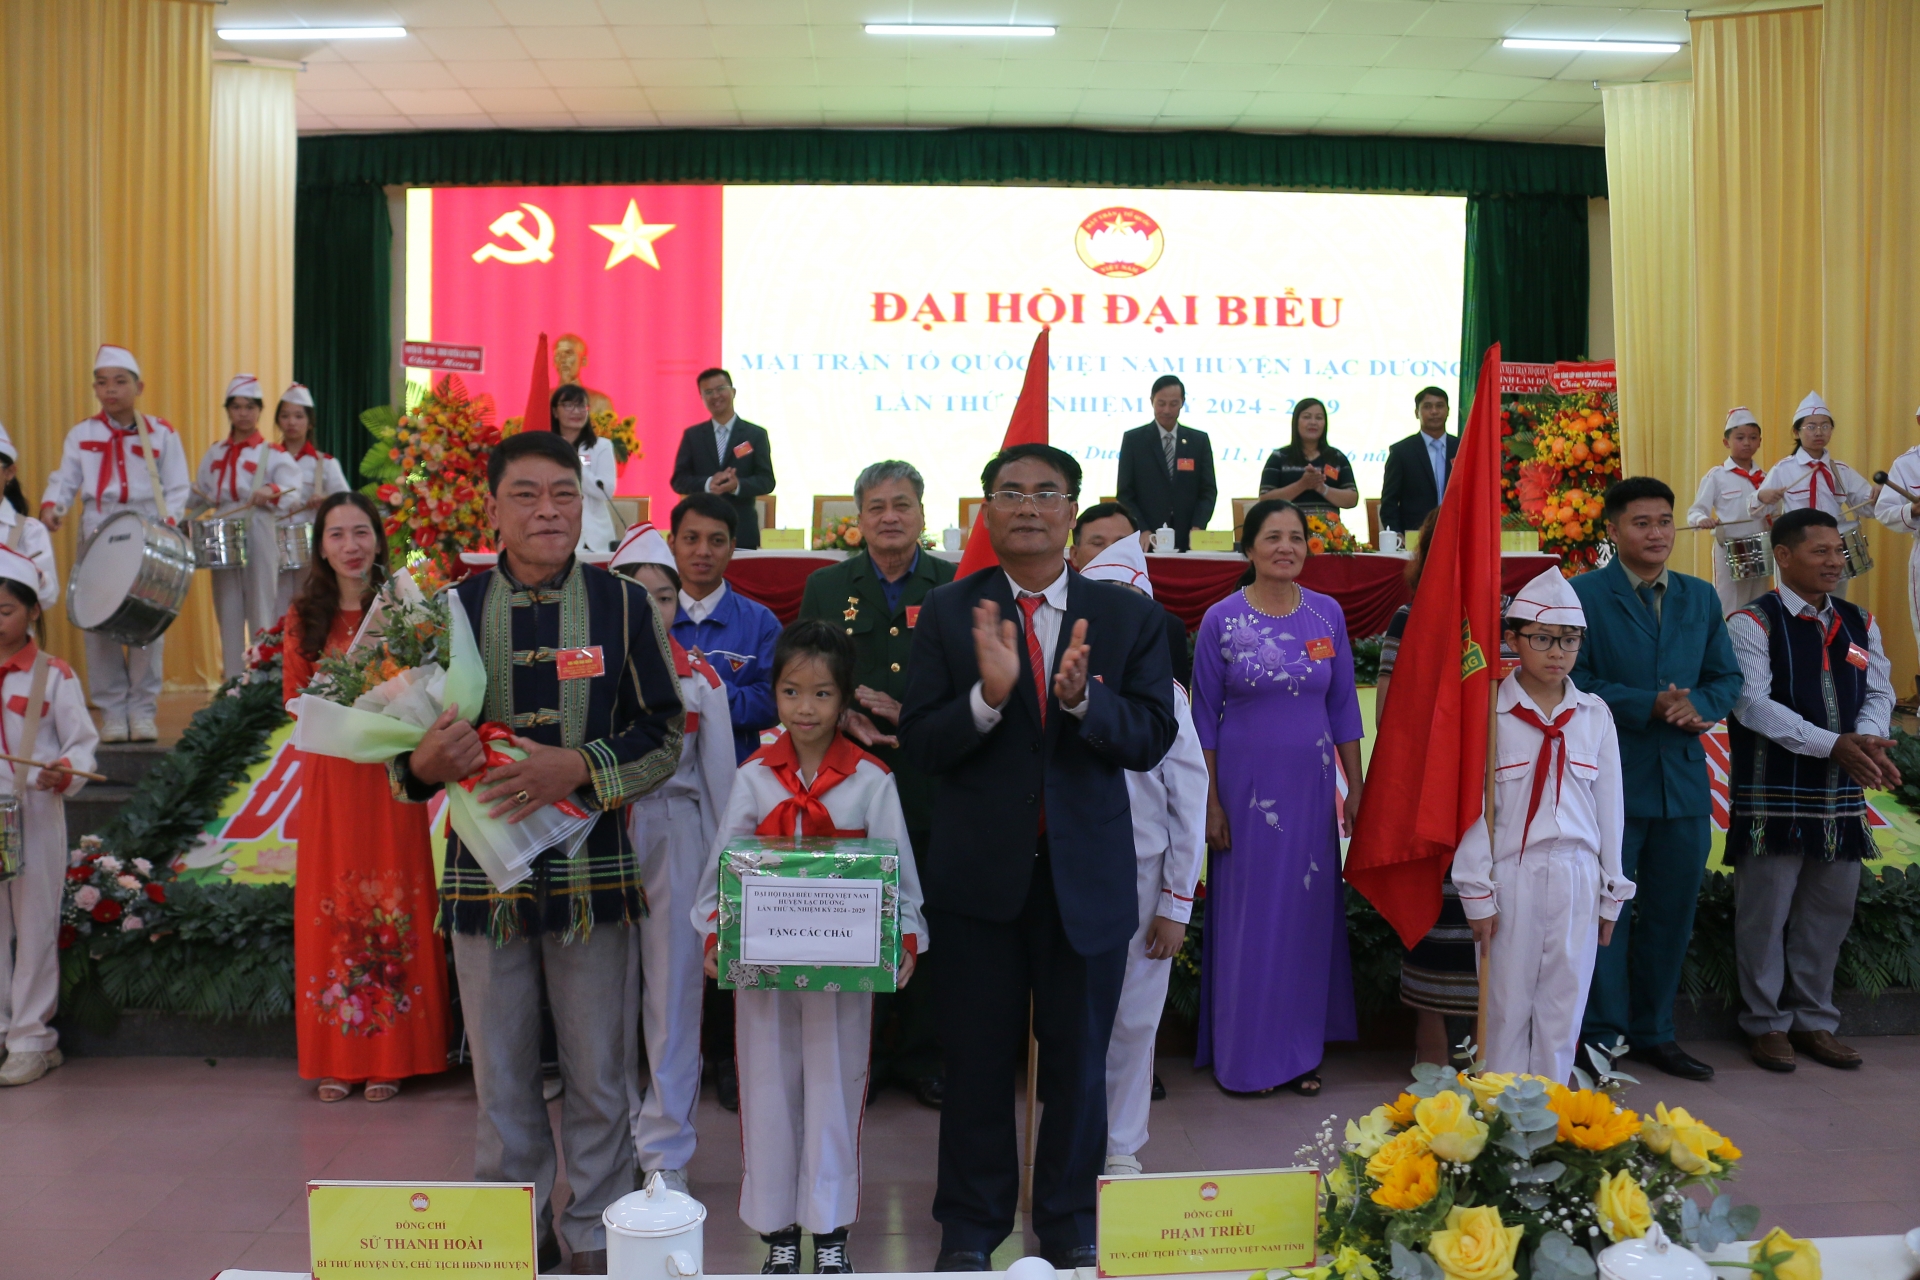 Đồng chí Ya Tiong - Phó Bí thư Thường trực Huyện ủy thay mặt Đoàn Chủ tịch tặng hoa và quà cho Đoàn đại biểu các tầng lớp nhân dân huyện Lạc Dương đến chúc mừng Đại hội. 